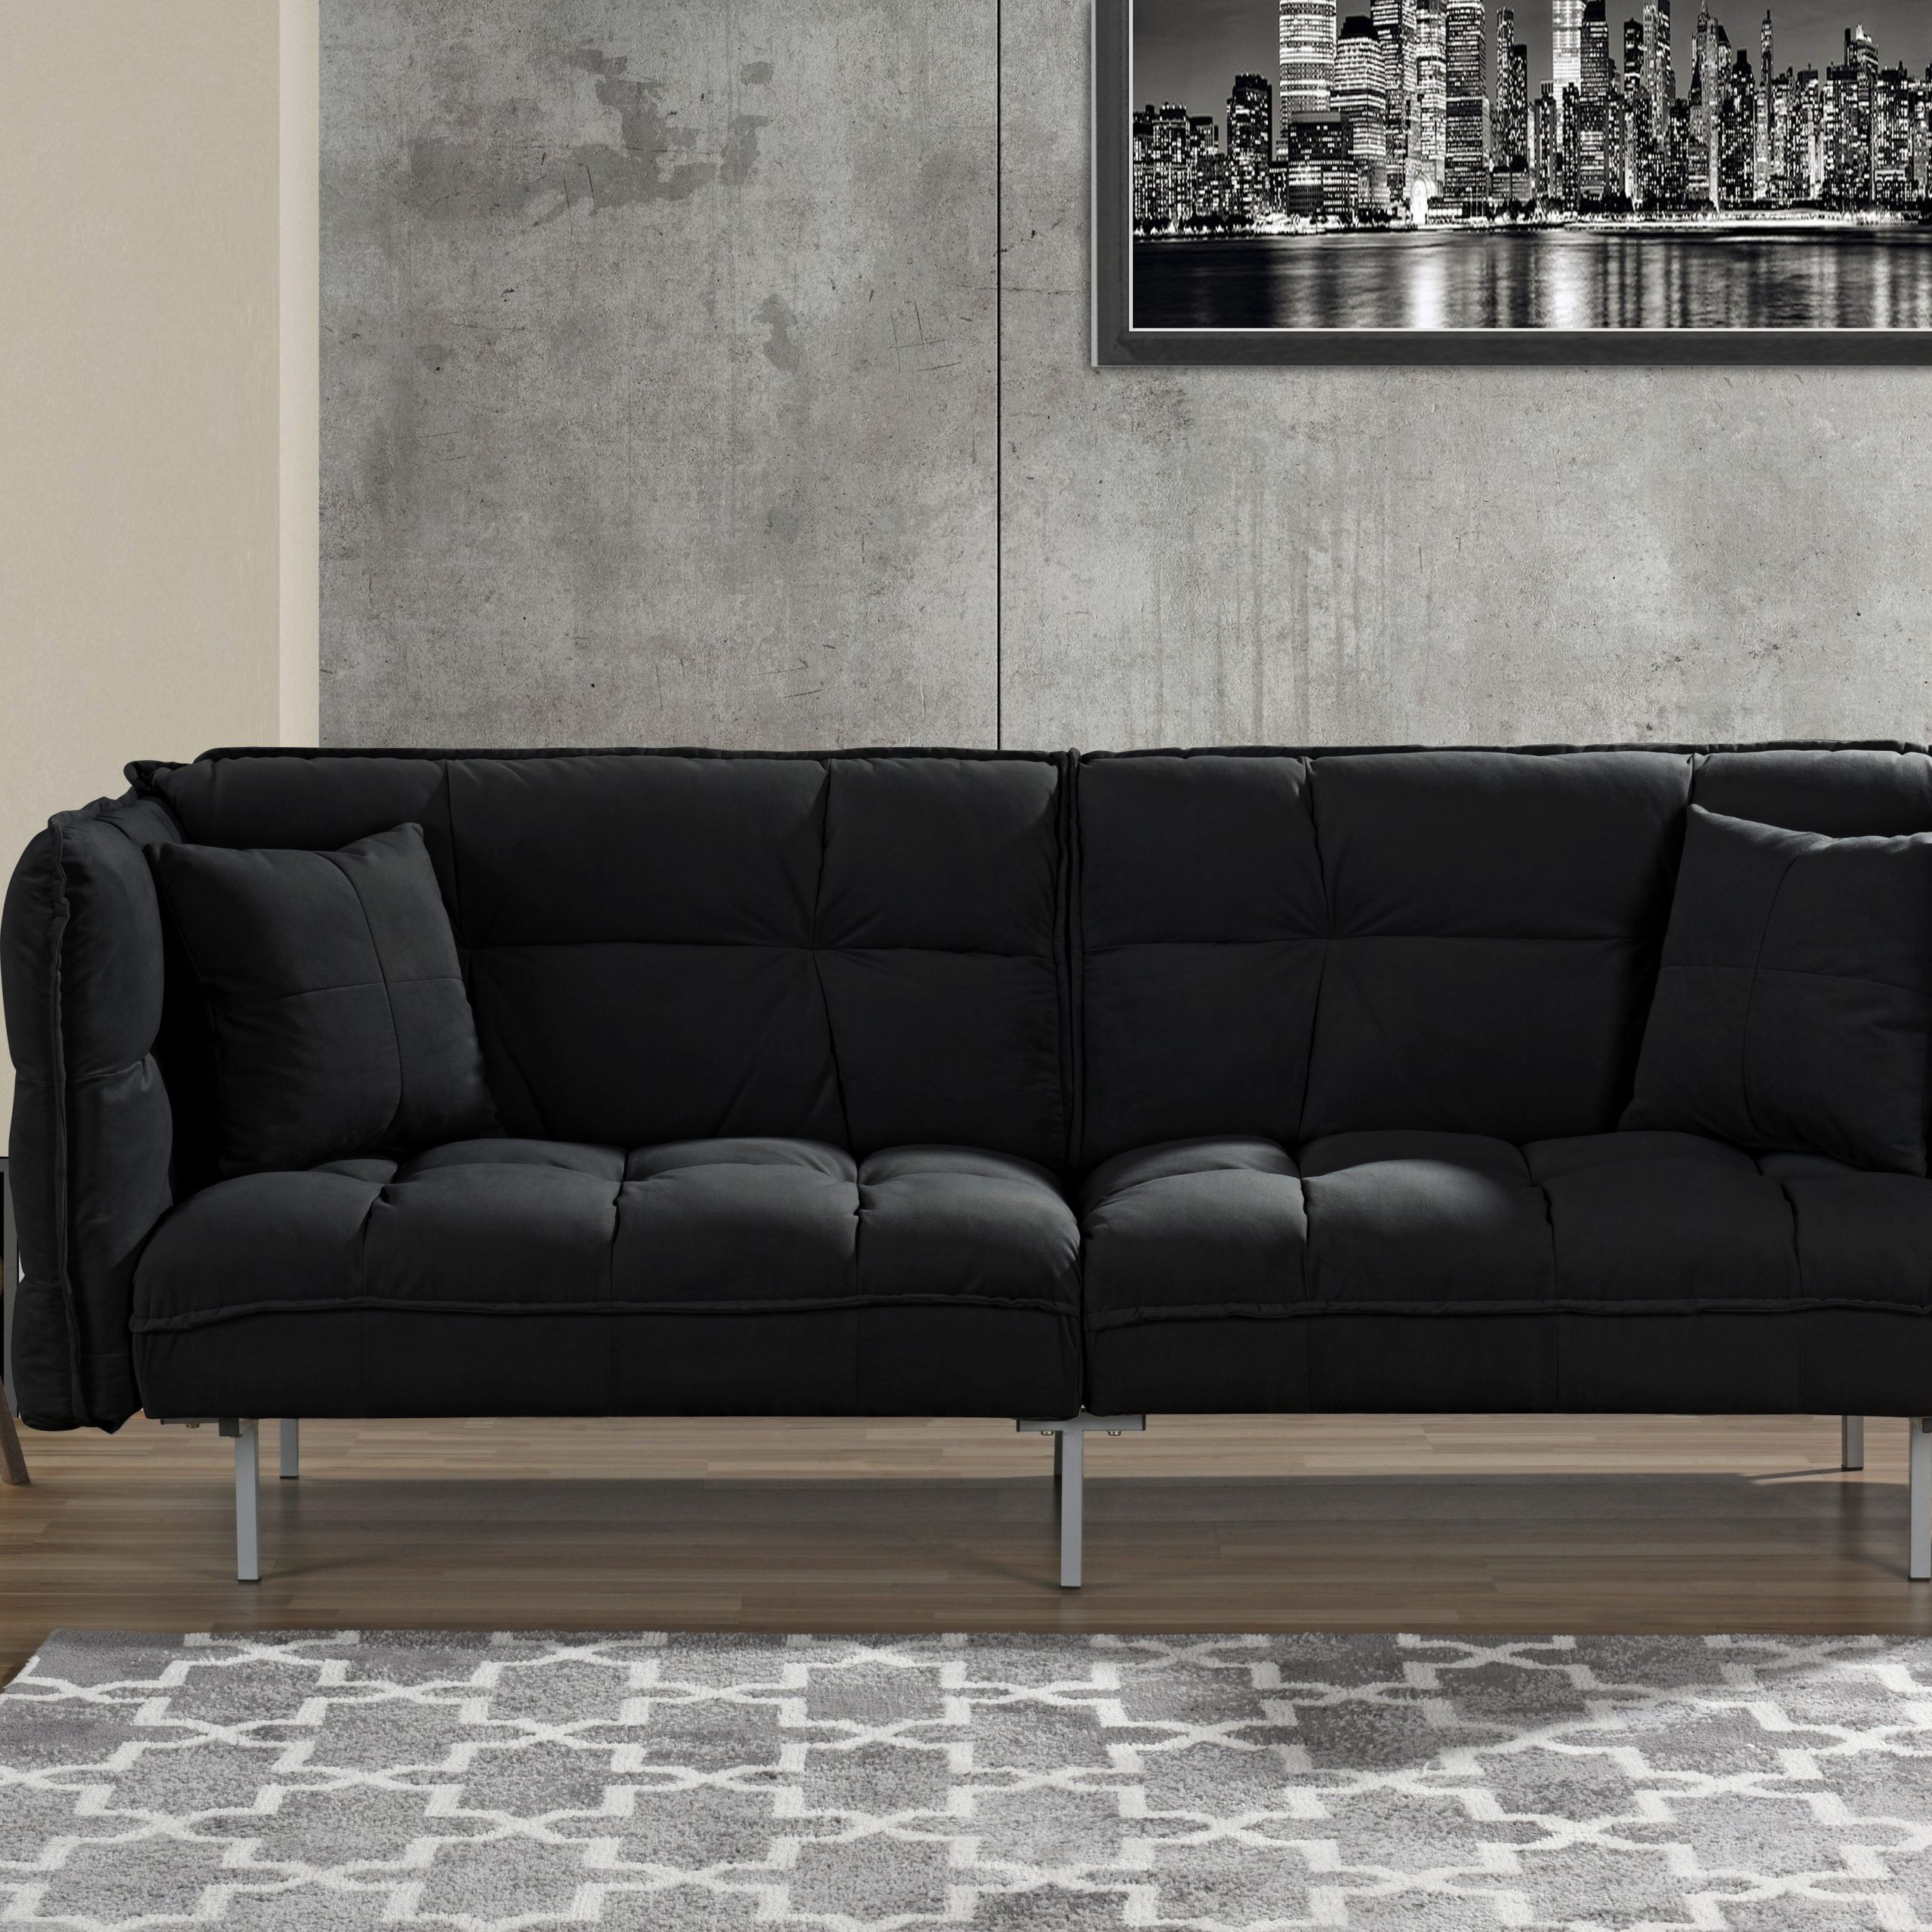 Plush Tufted Velvet Sleeper Sofa, Black – Walmart Within Black Velvet Sofas (View 7 of 20)